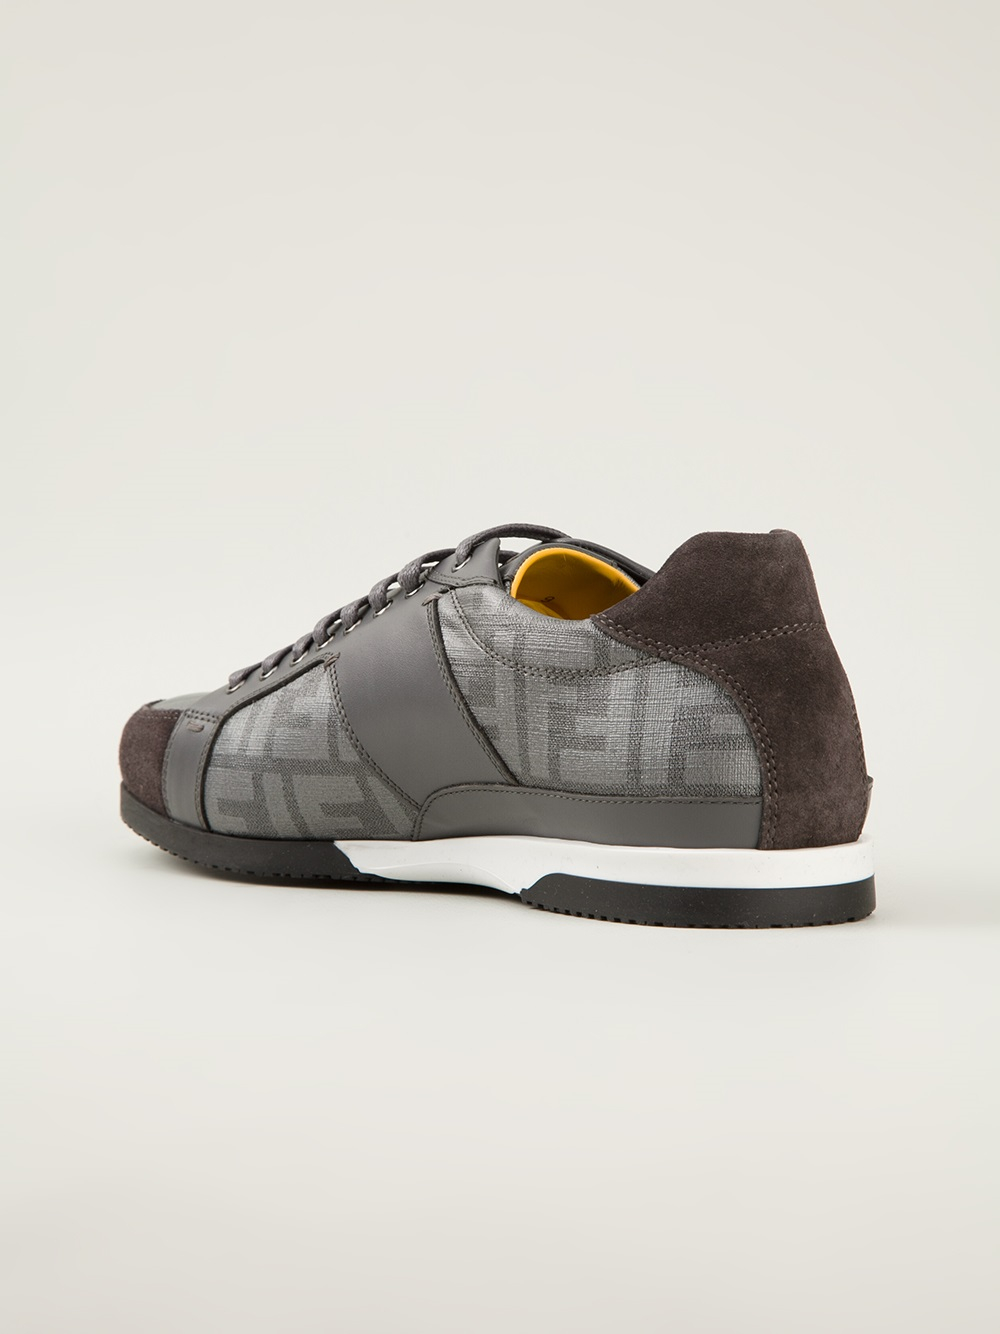 Fendi Zucca Sneakers in Grey (Gray) for Men - Lyst